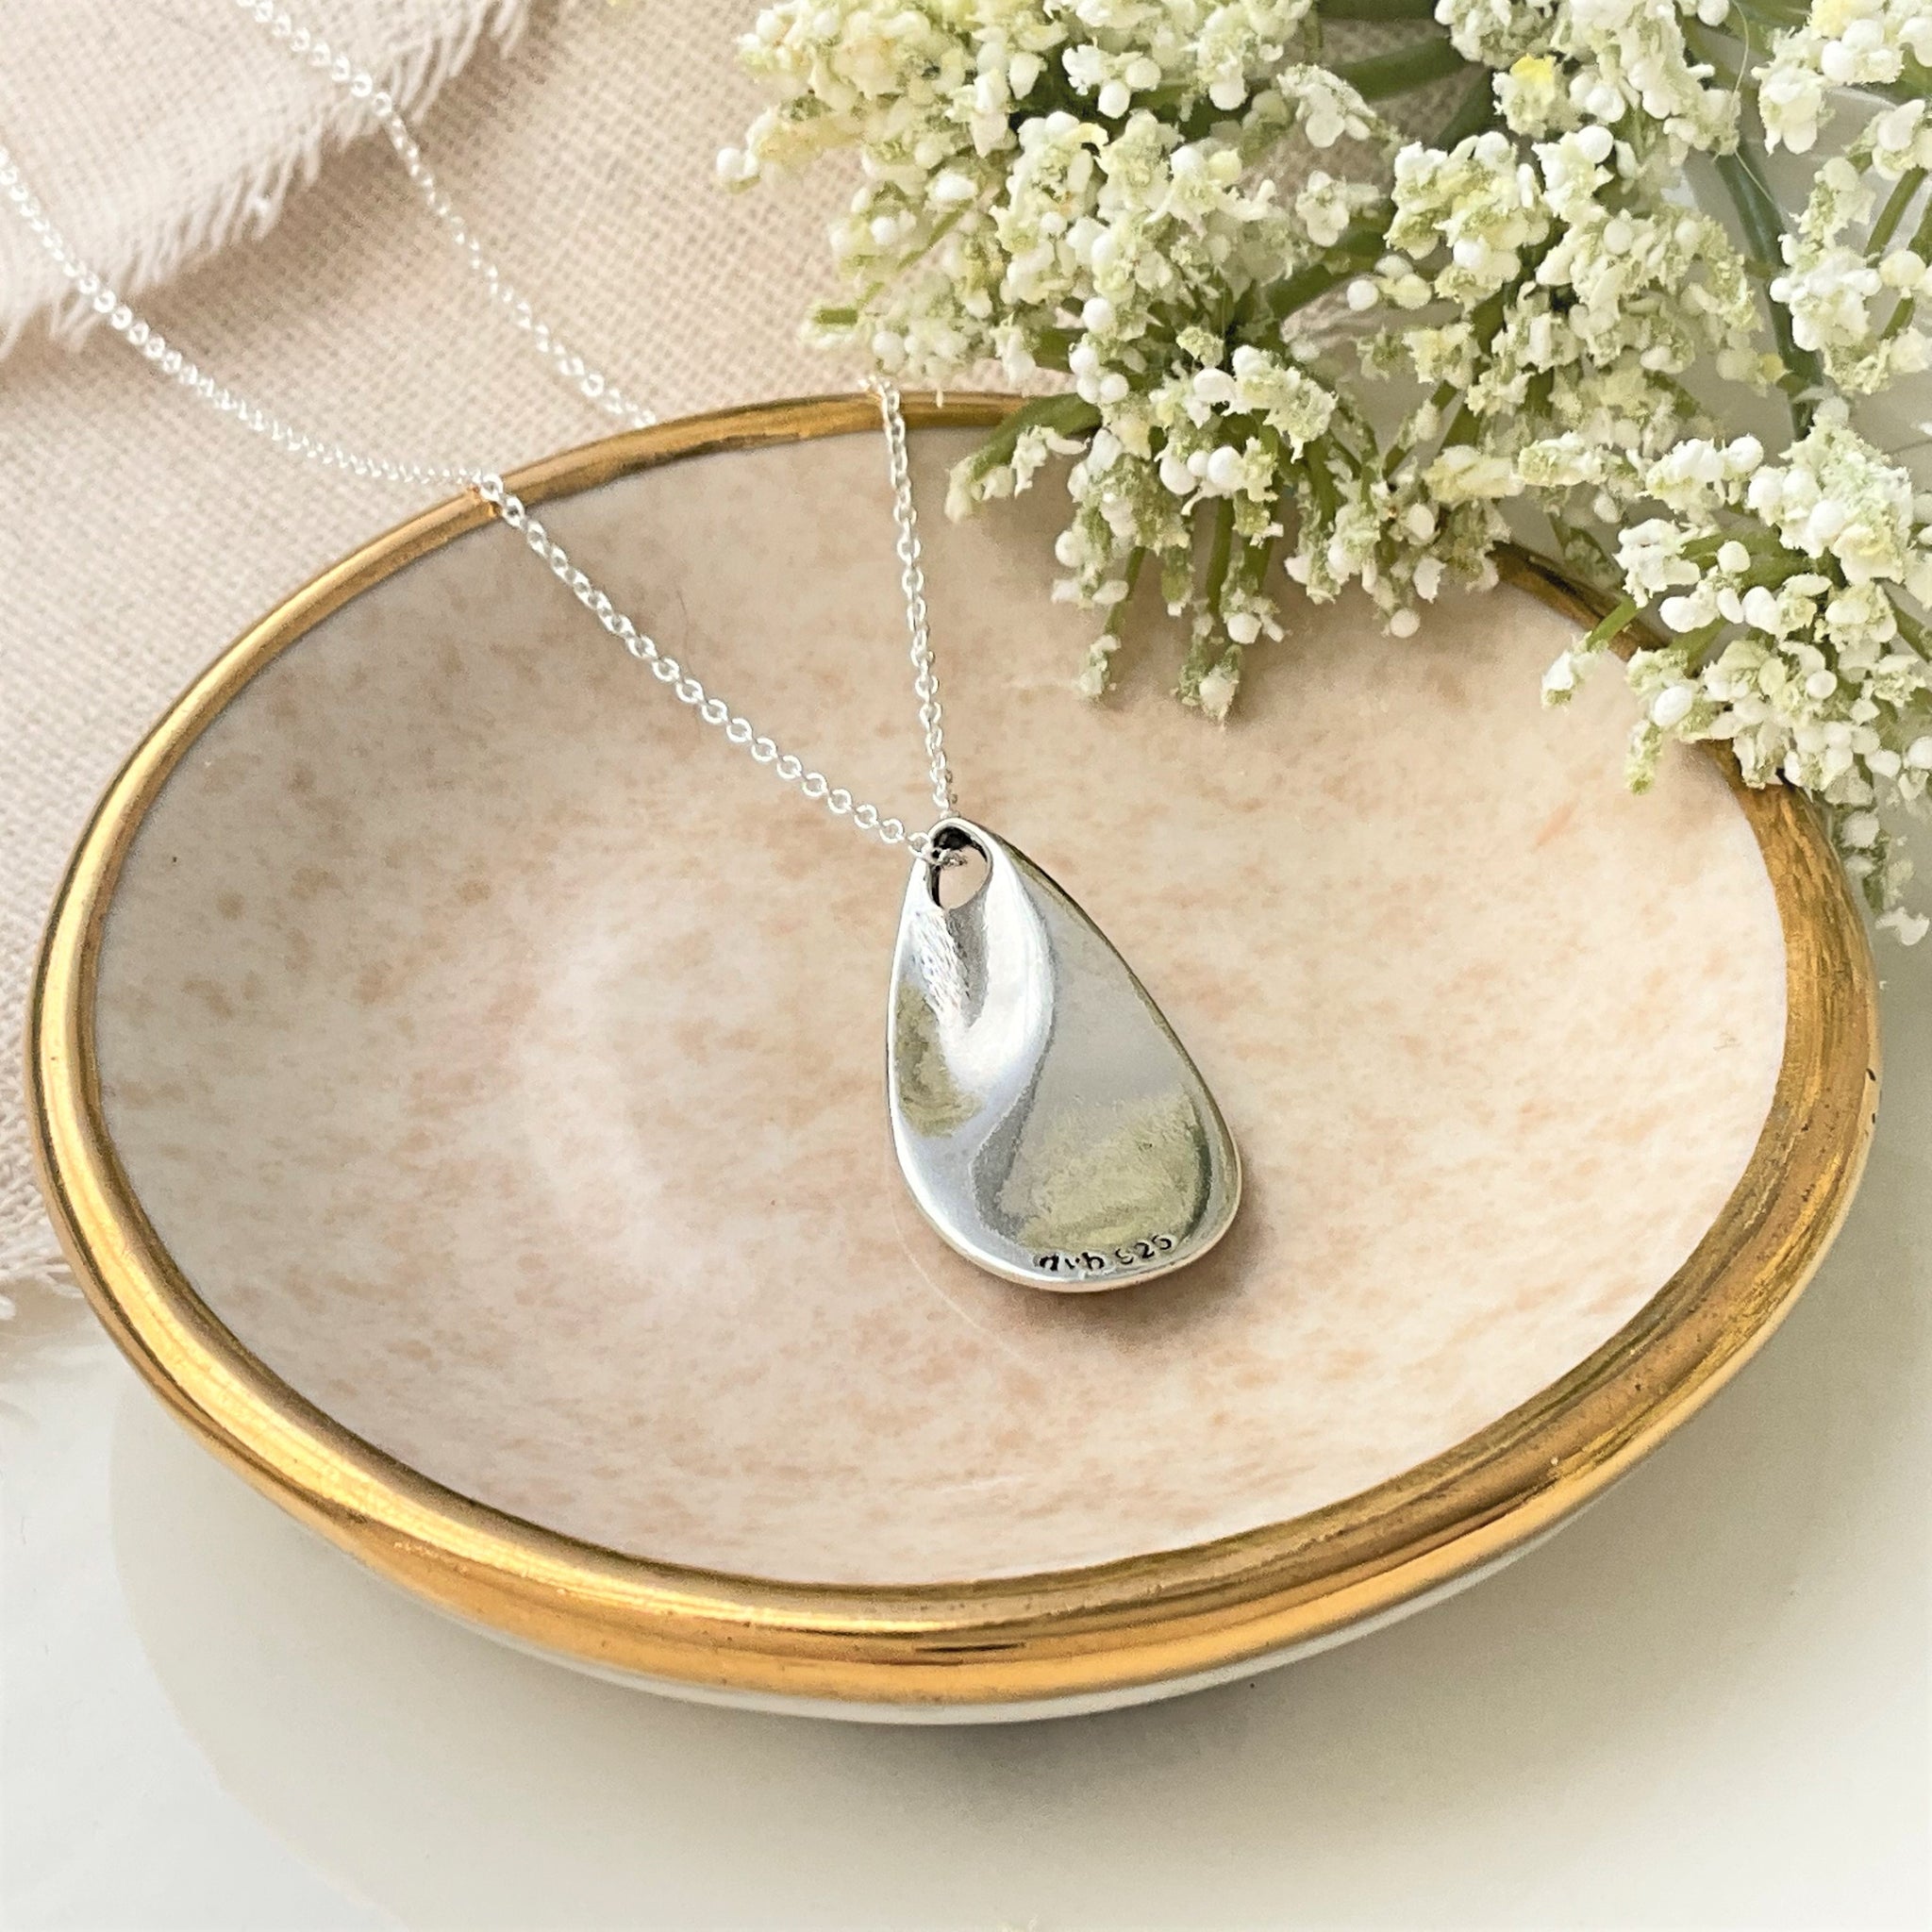 Glittery Fingerprint Necklace - Memorial Jewelry, Teardrop shape with – My  Fine Silver Designs